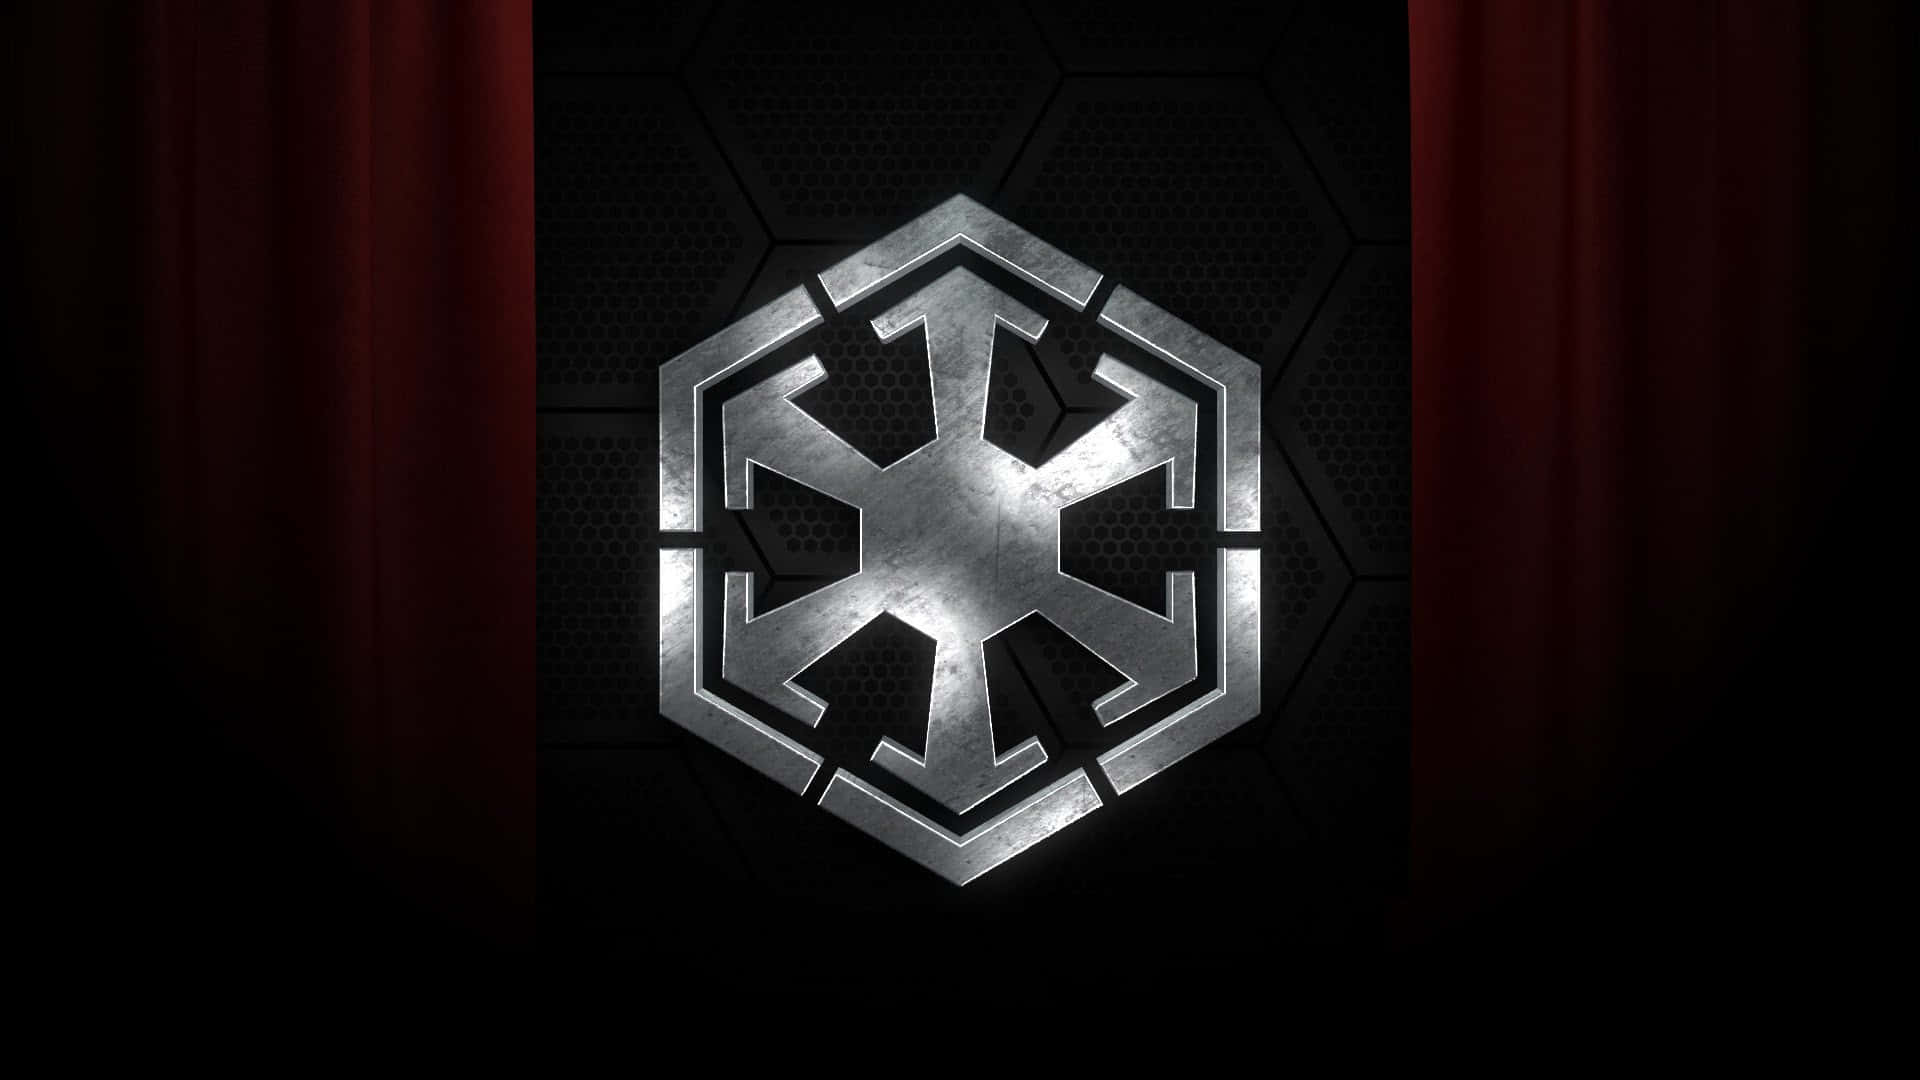 Dasikonische Star Wars Imperiums-logo Wallpaper